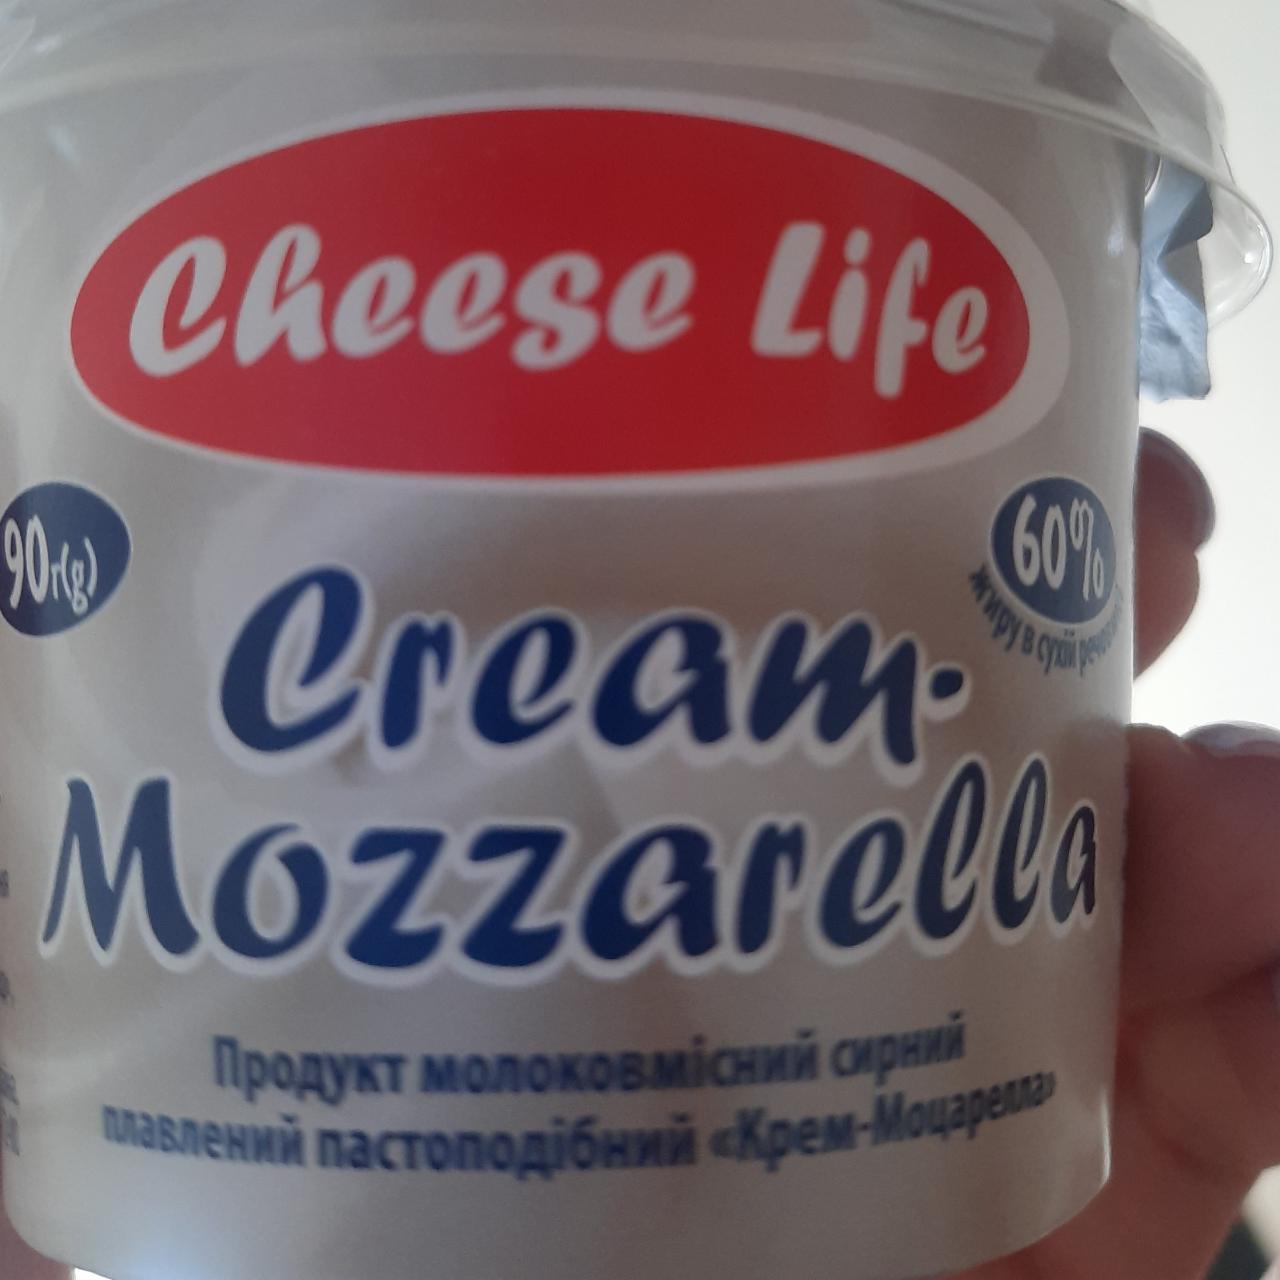 Фото - Крем-моцарелла 60% Cream Mozzarella Cheese Life